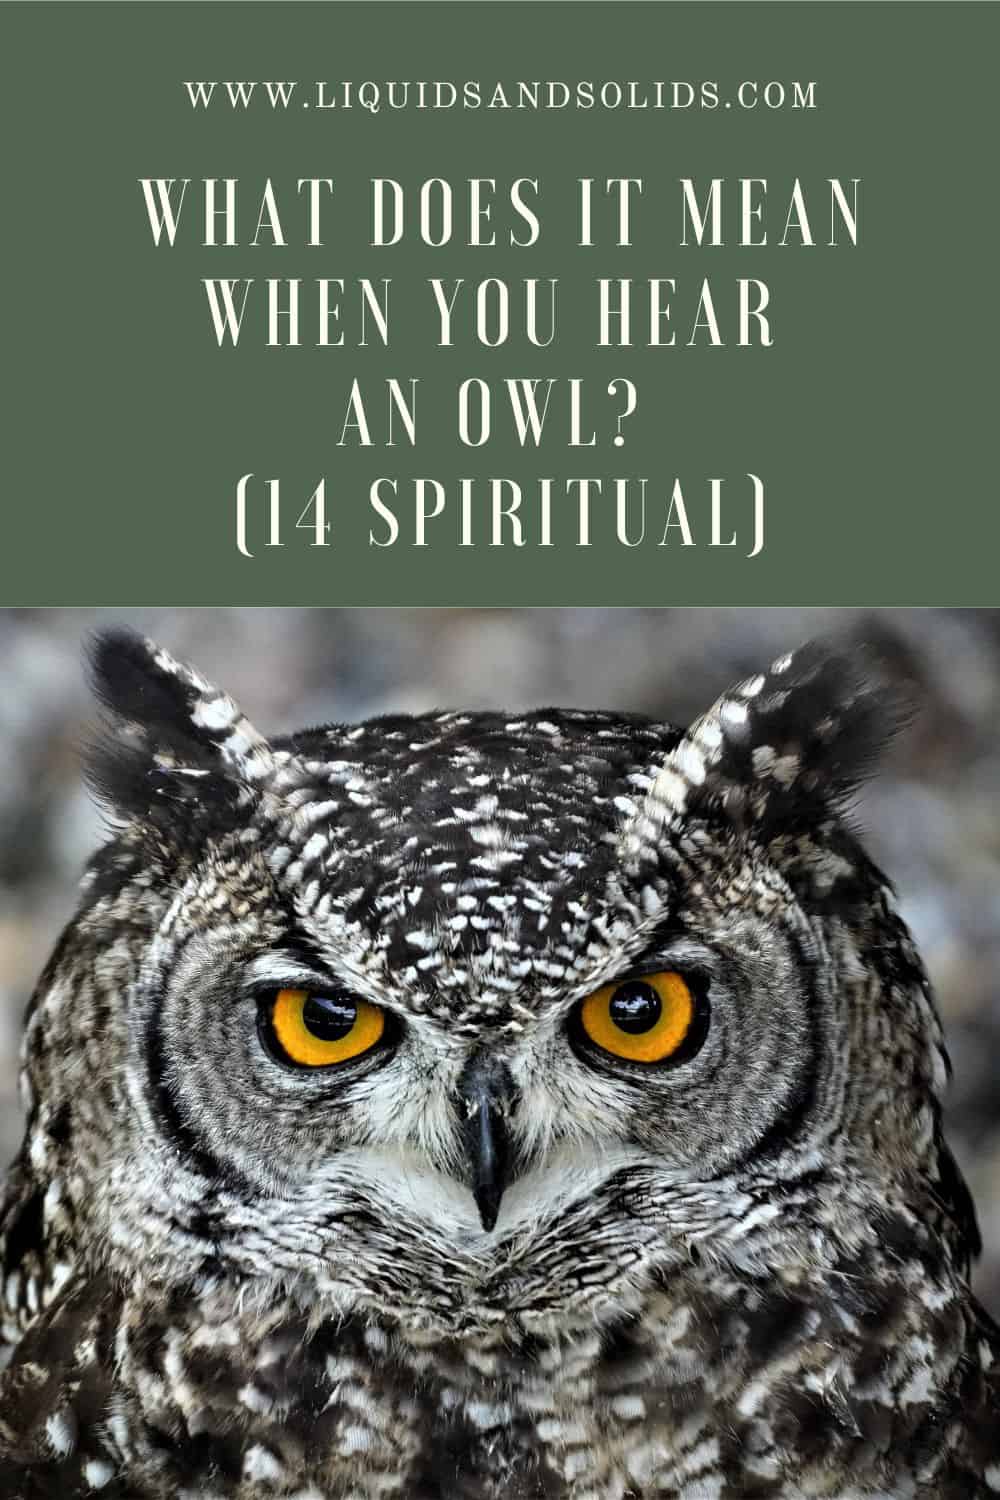  Mida tähendab see, kui sa kuuled öökulli? (14 vaimset tähendust)